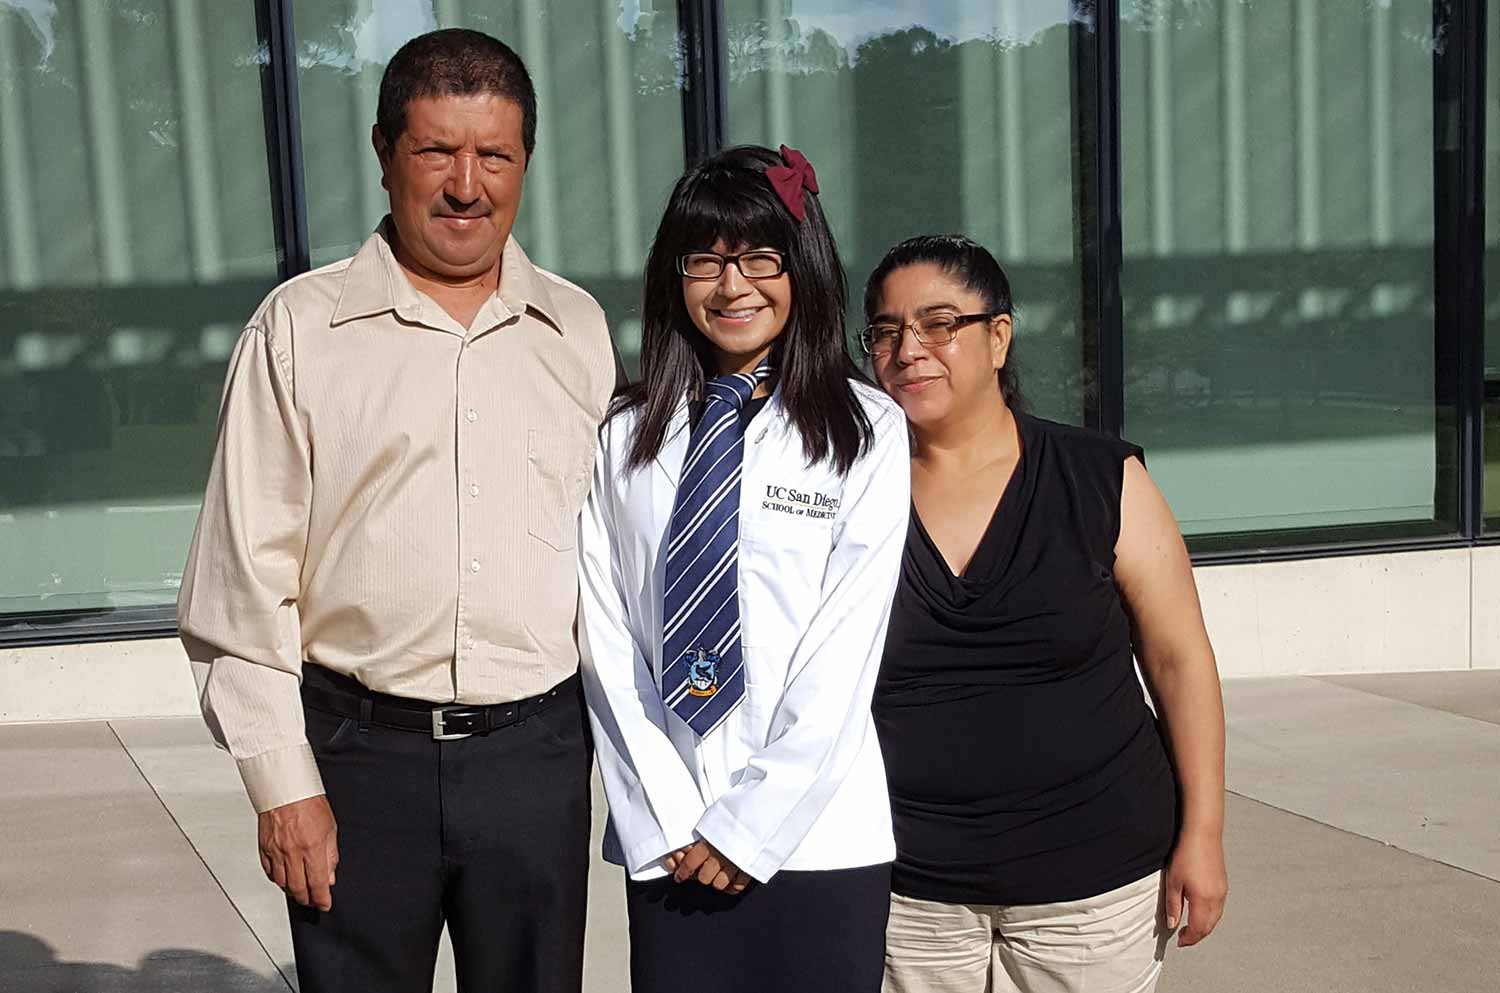 Maribel Patiño with her parents